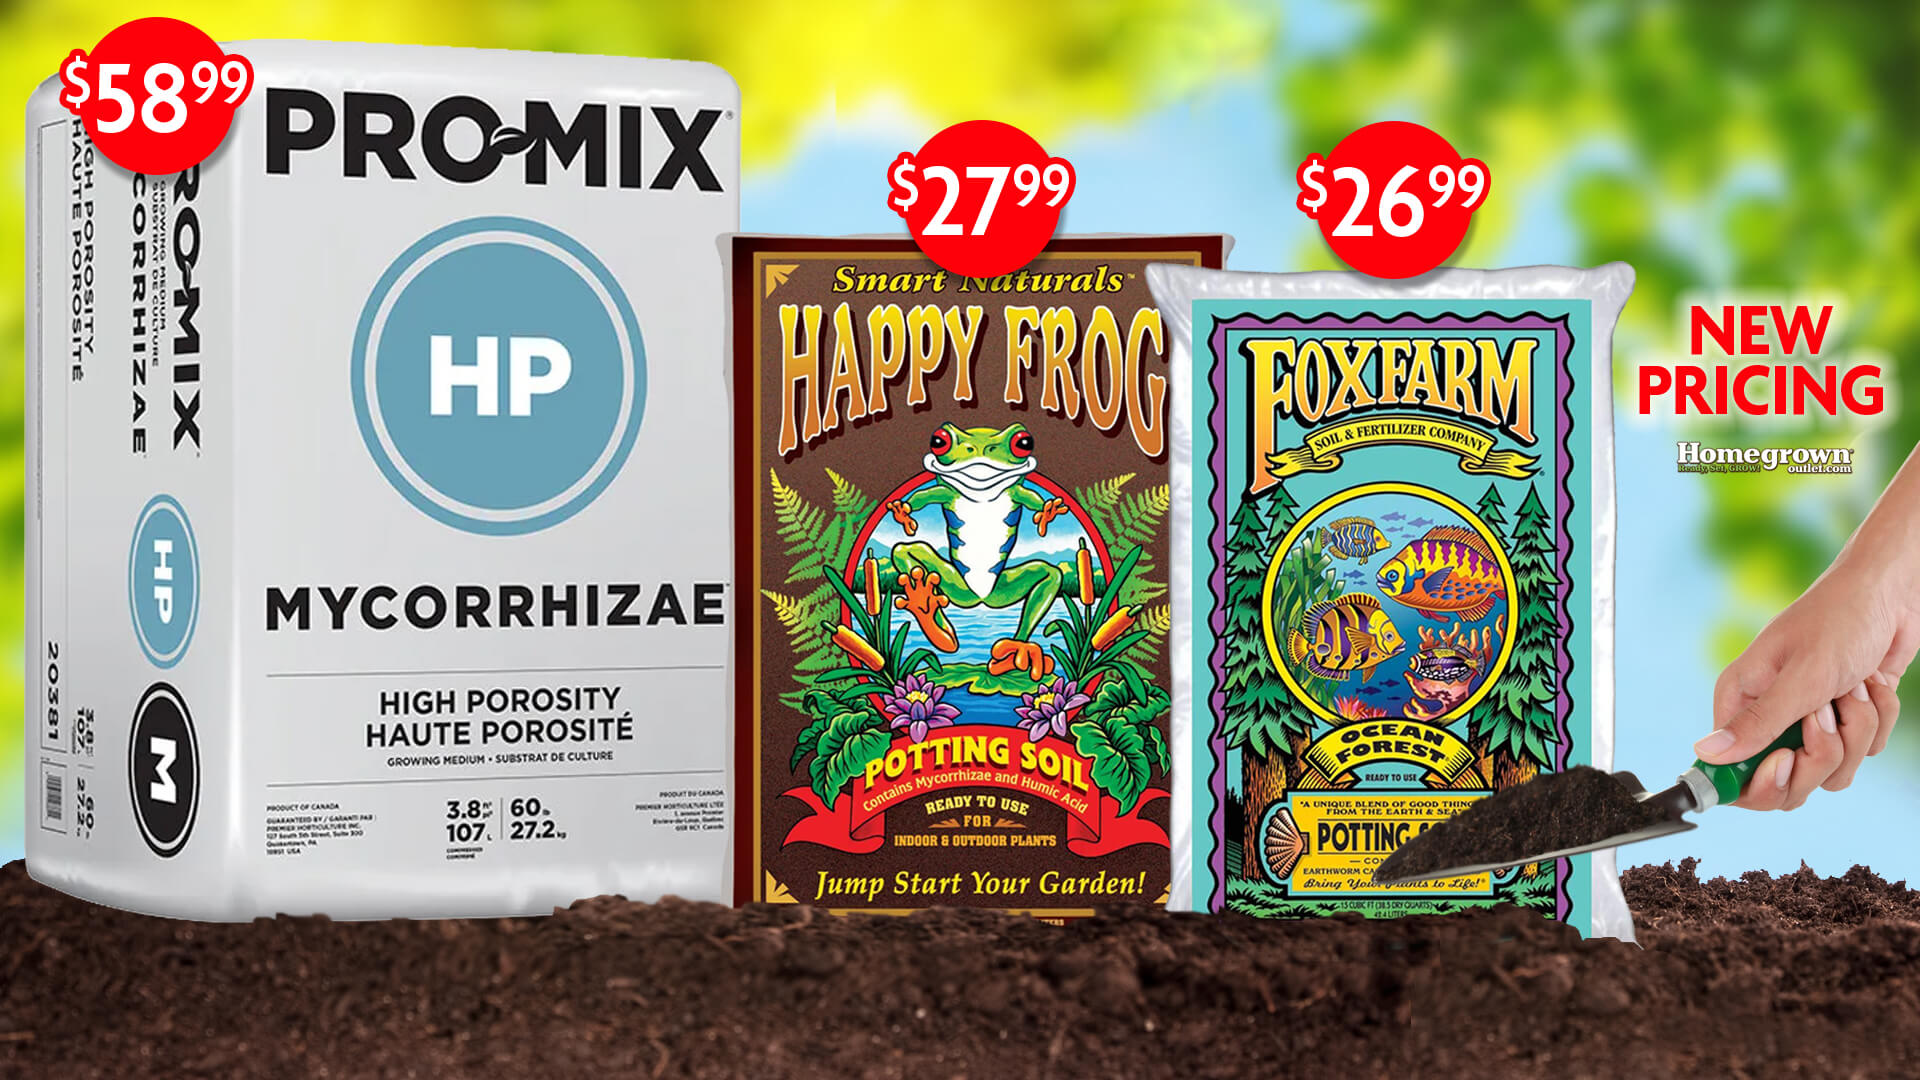 New Pricing of Promix Mycorrhizae Happy Frog Foxfarm